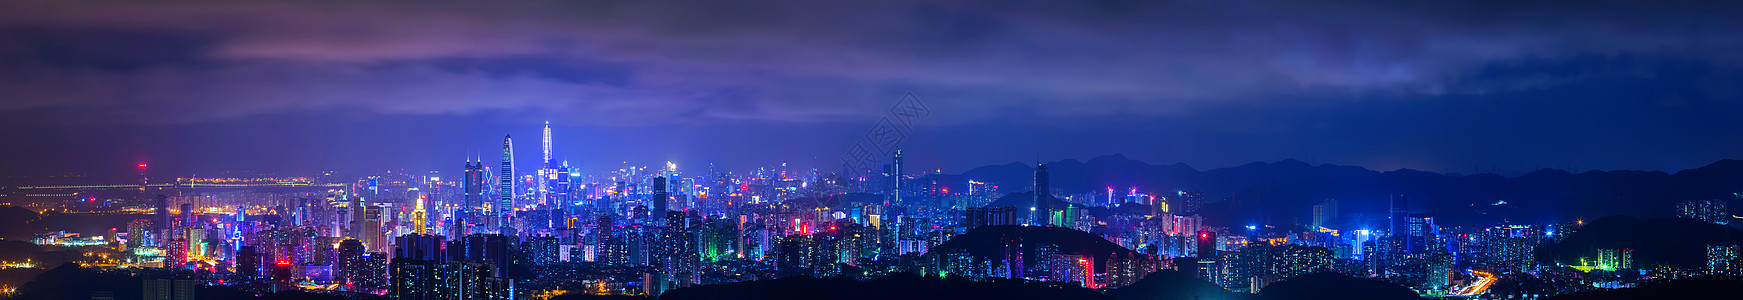 深圳cbd深圳城市夜景背景